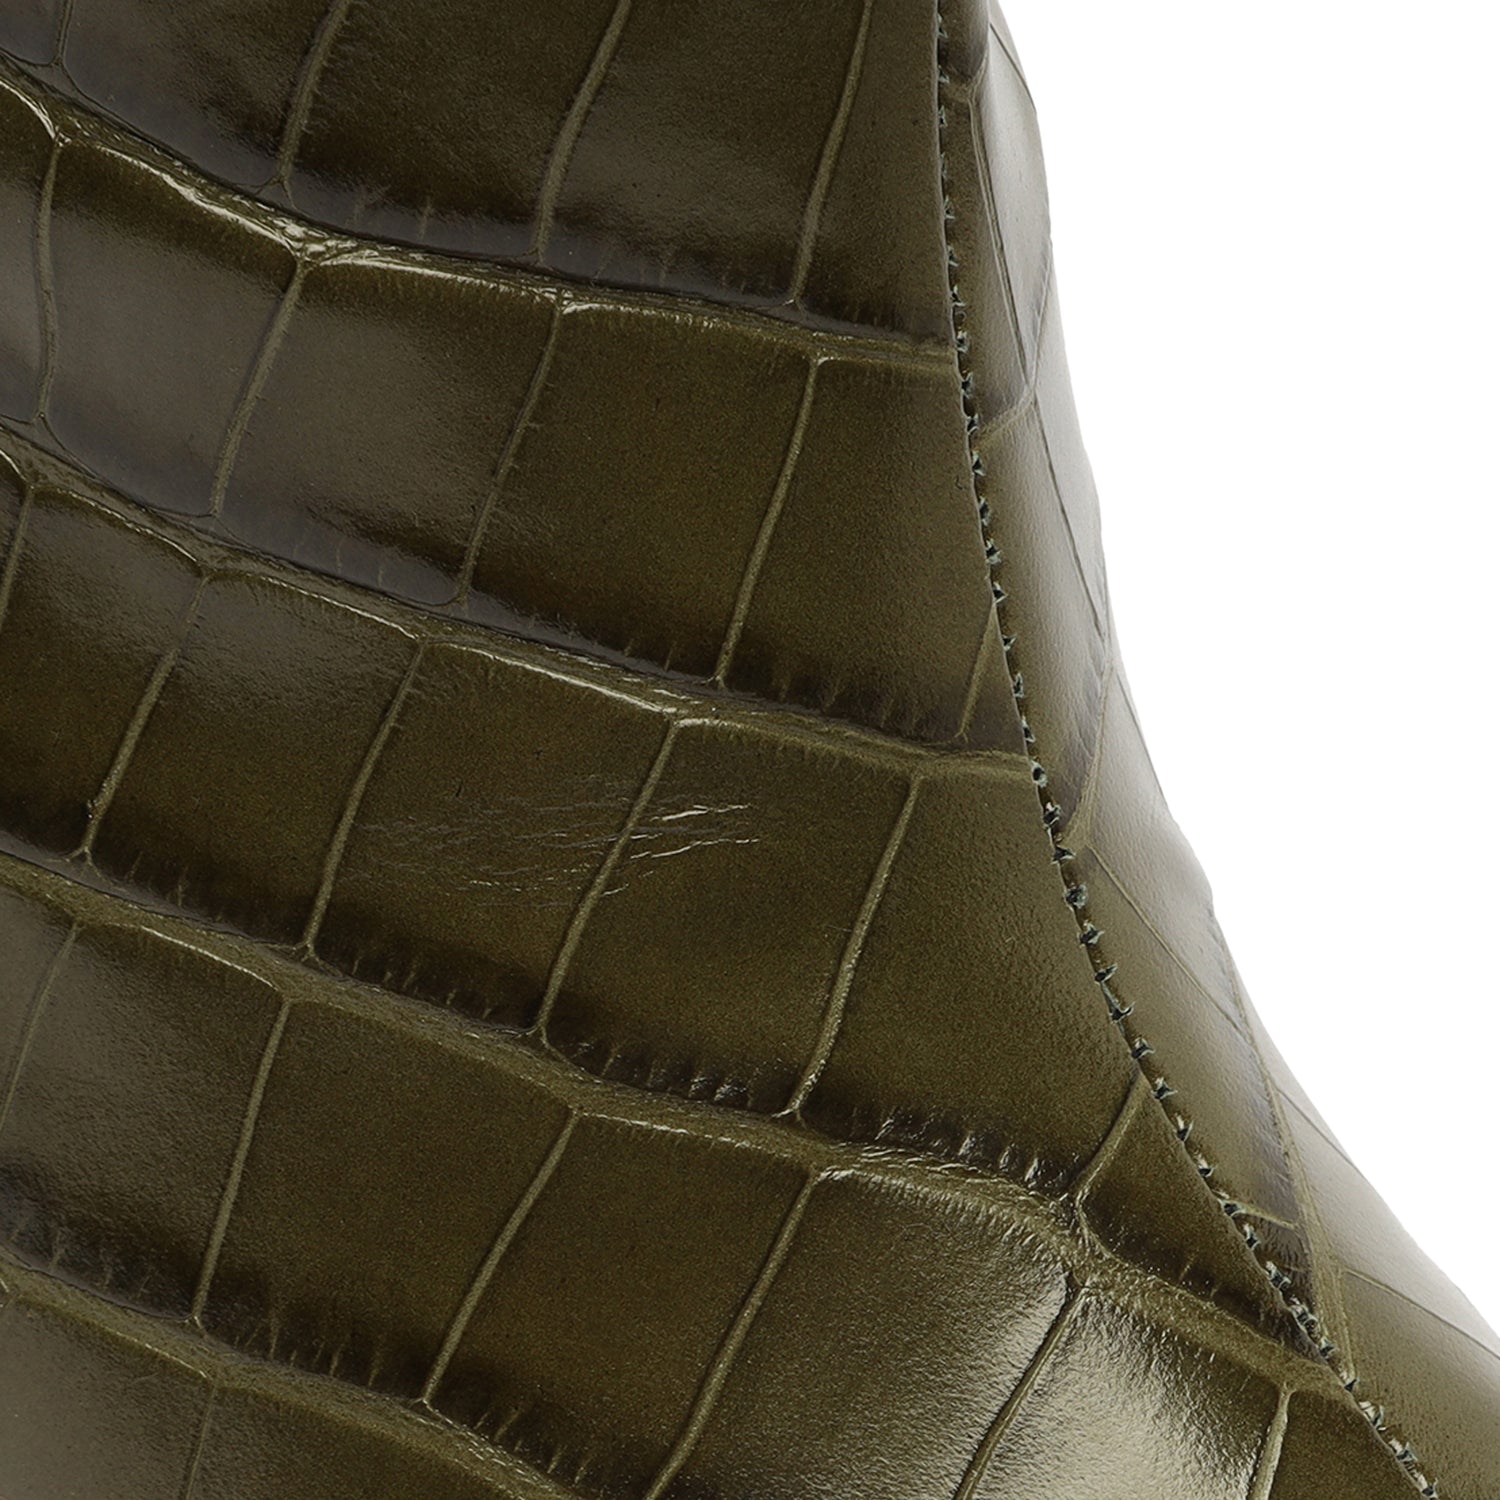 Schutz Maryana Block Crocodile-Embossed Leather Boot